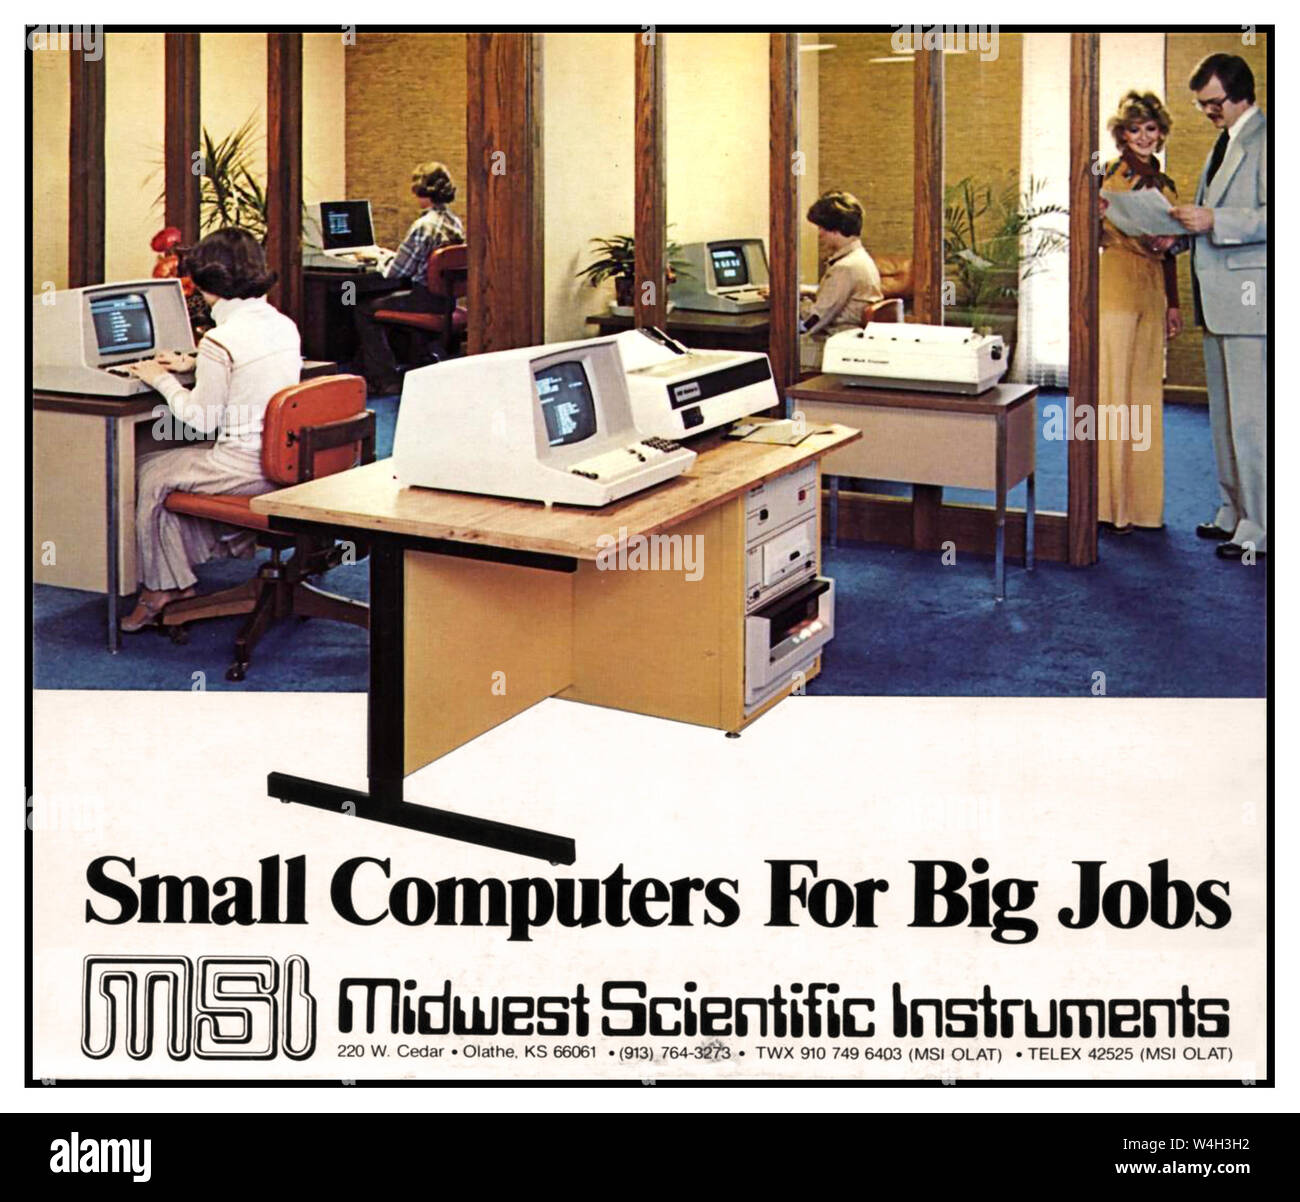 Vintage 1970 equipo office situación con instrumentos científicos Midwest americano computadoras de escritorio Kilobaud Microcomputing revista anuncio en junio de 1979 EE.UU. Foto de stock